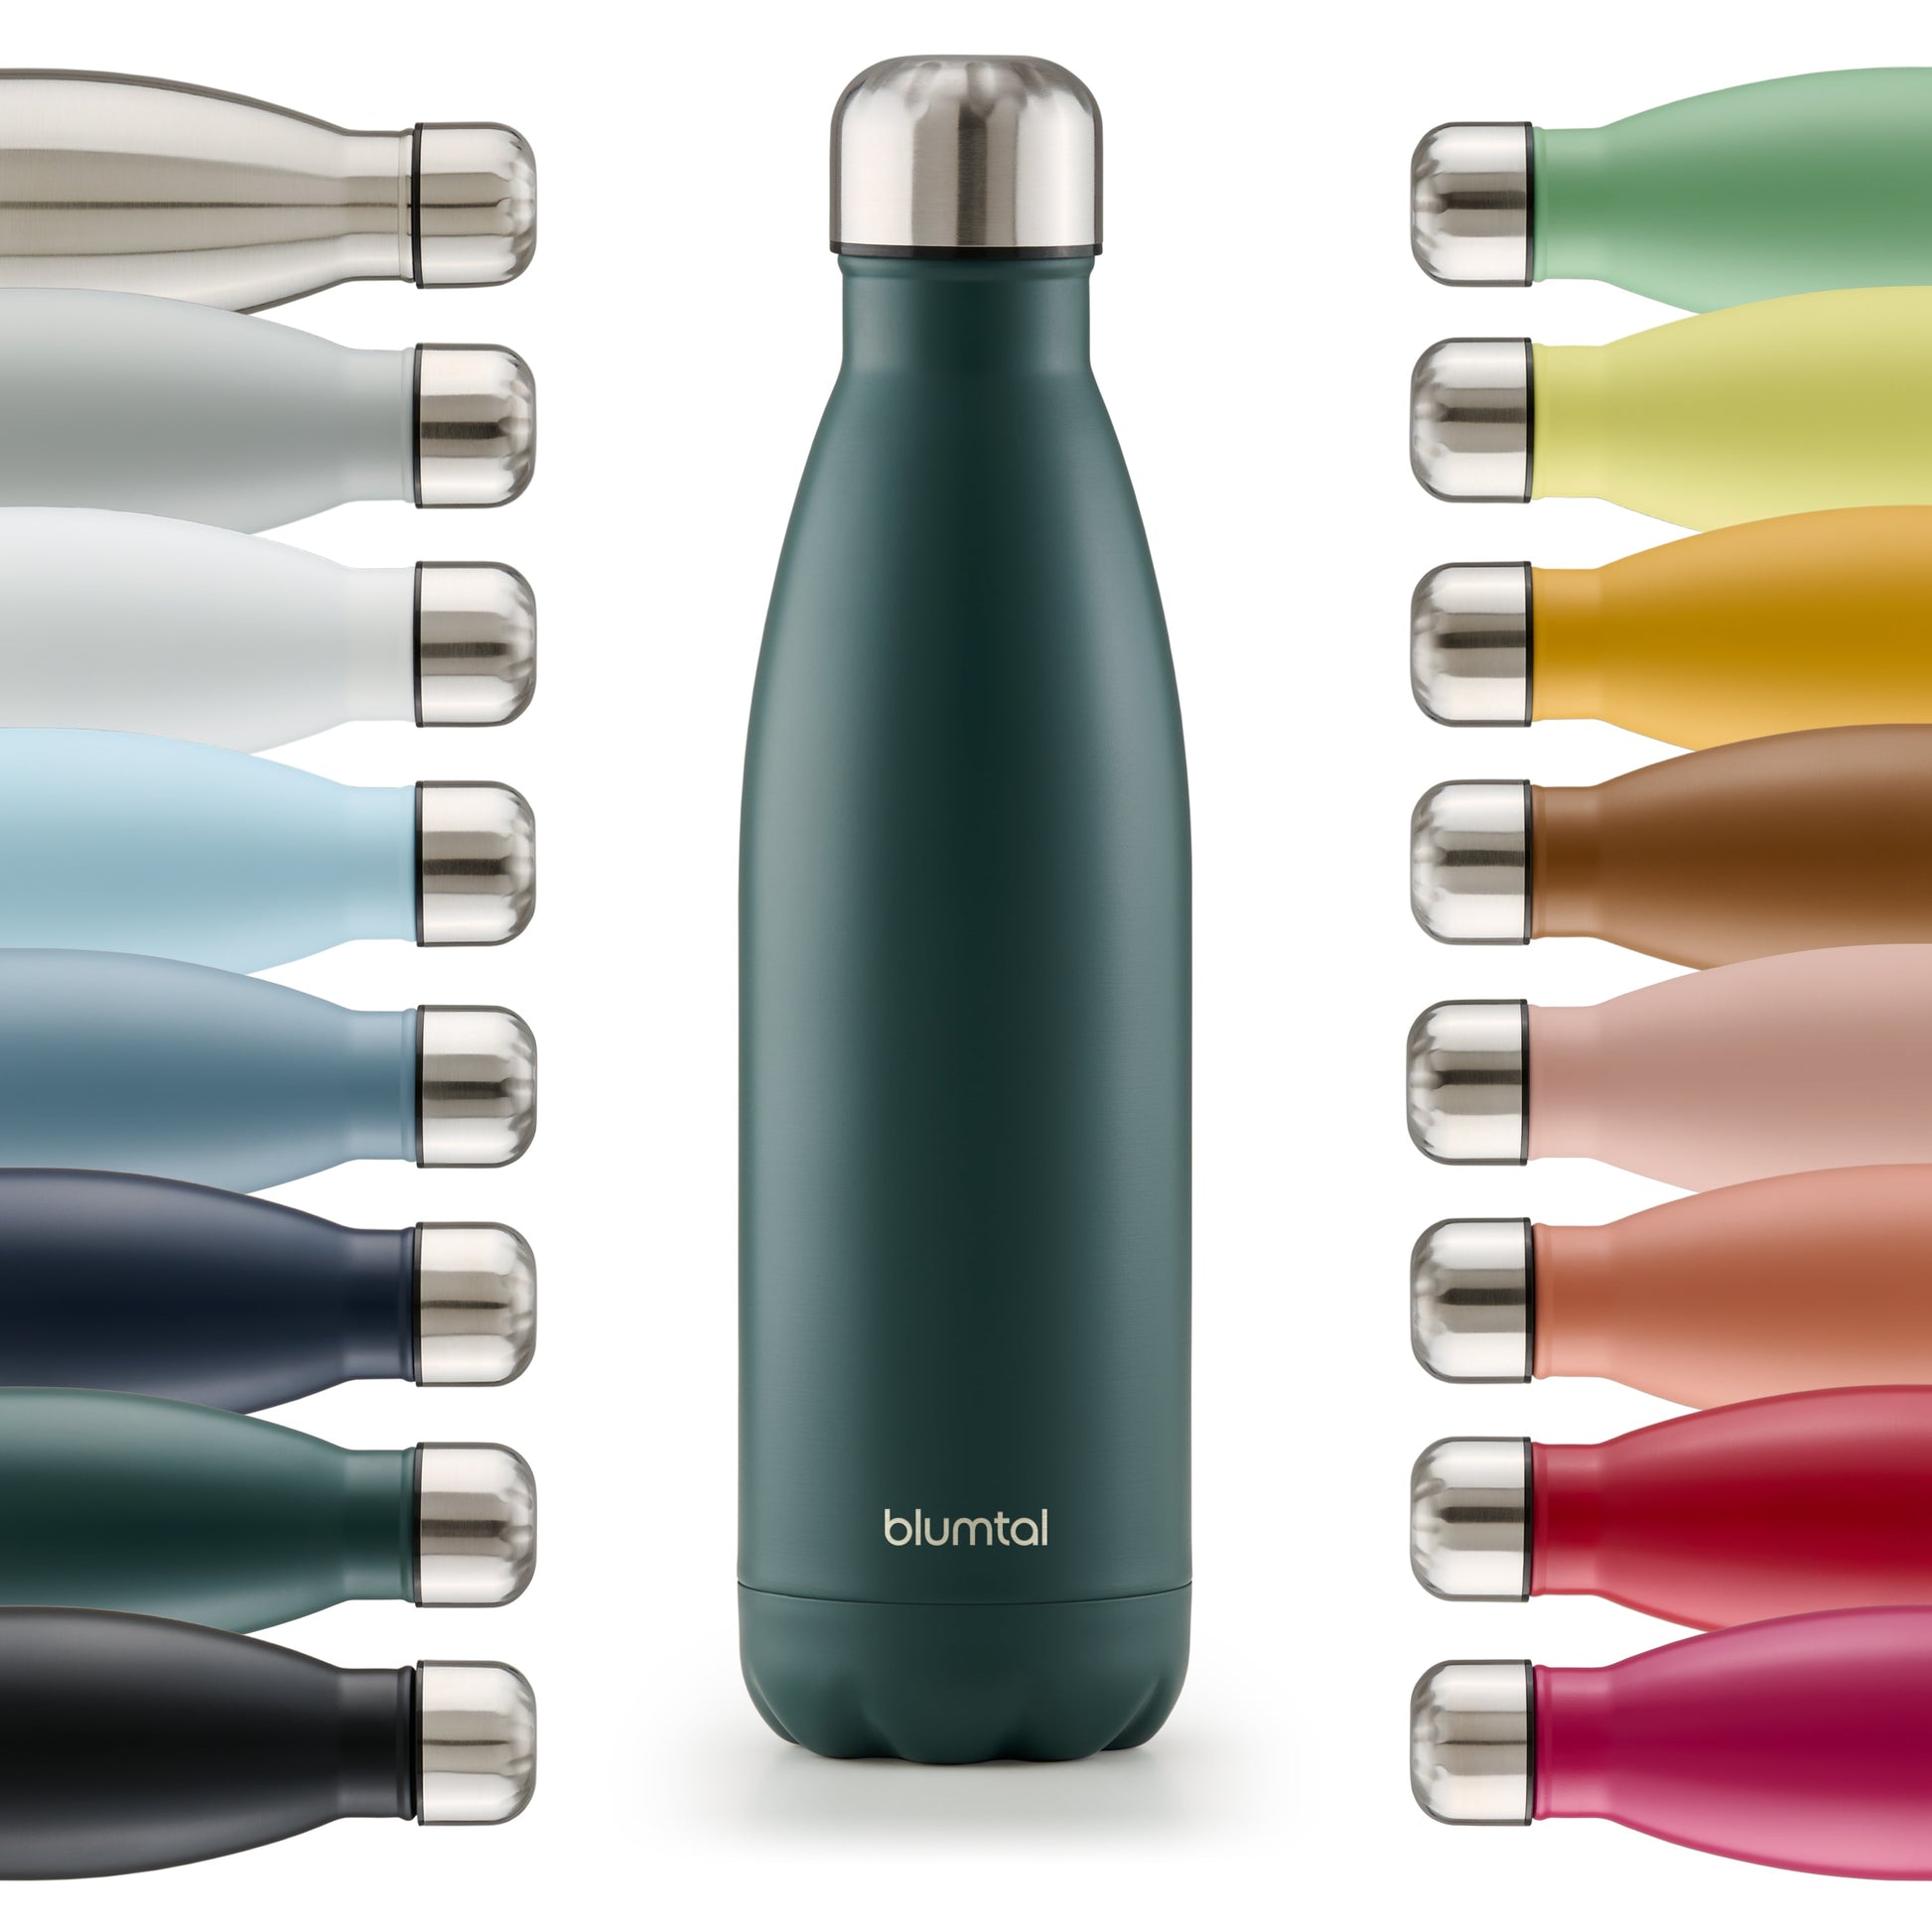 Farbige Auswahl an isolierten Edelstahl-Trinkflaschen von blumtal in einer Reihe angeordnet mit Fokus auf eine vorderseitige dunkelgrün farbene Flasche.